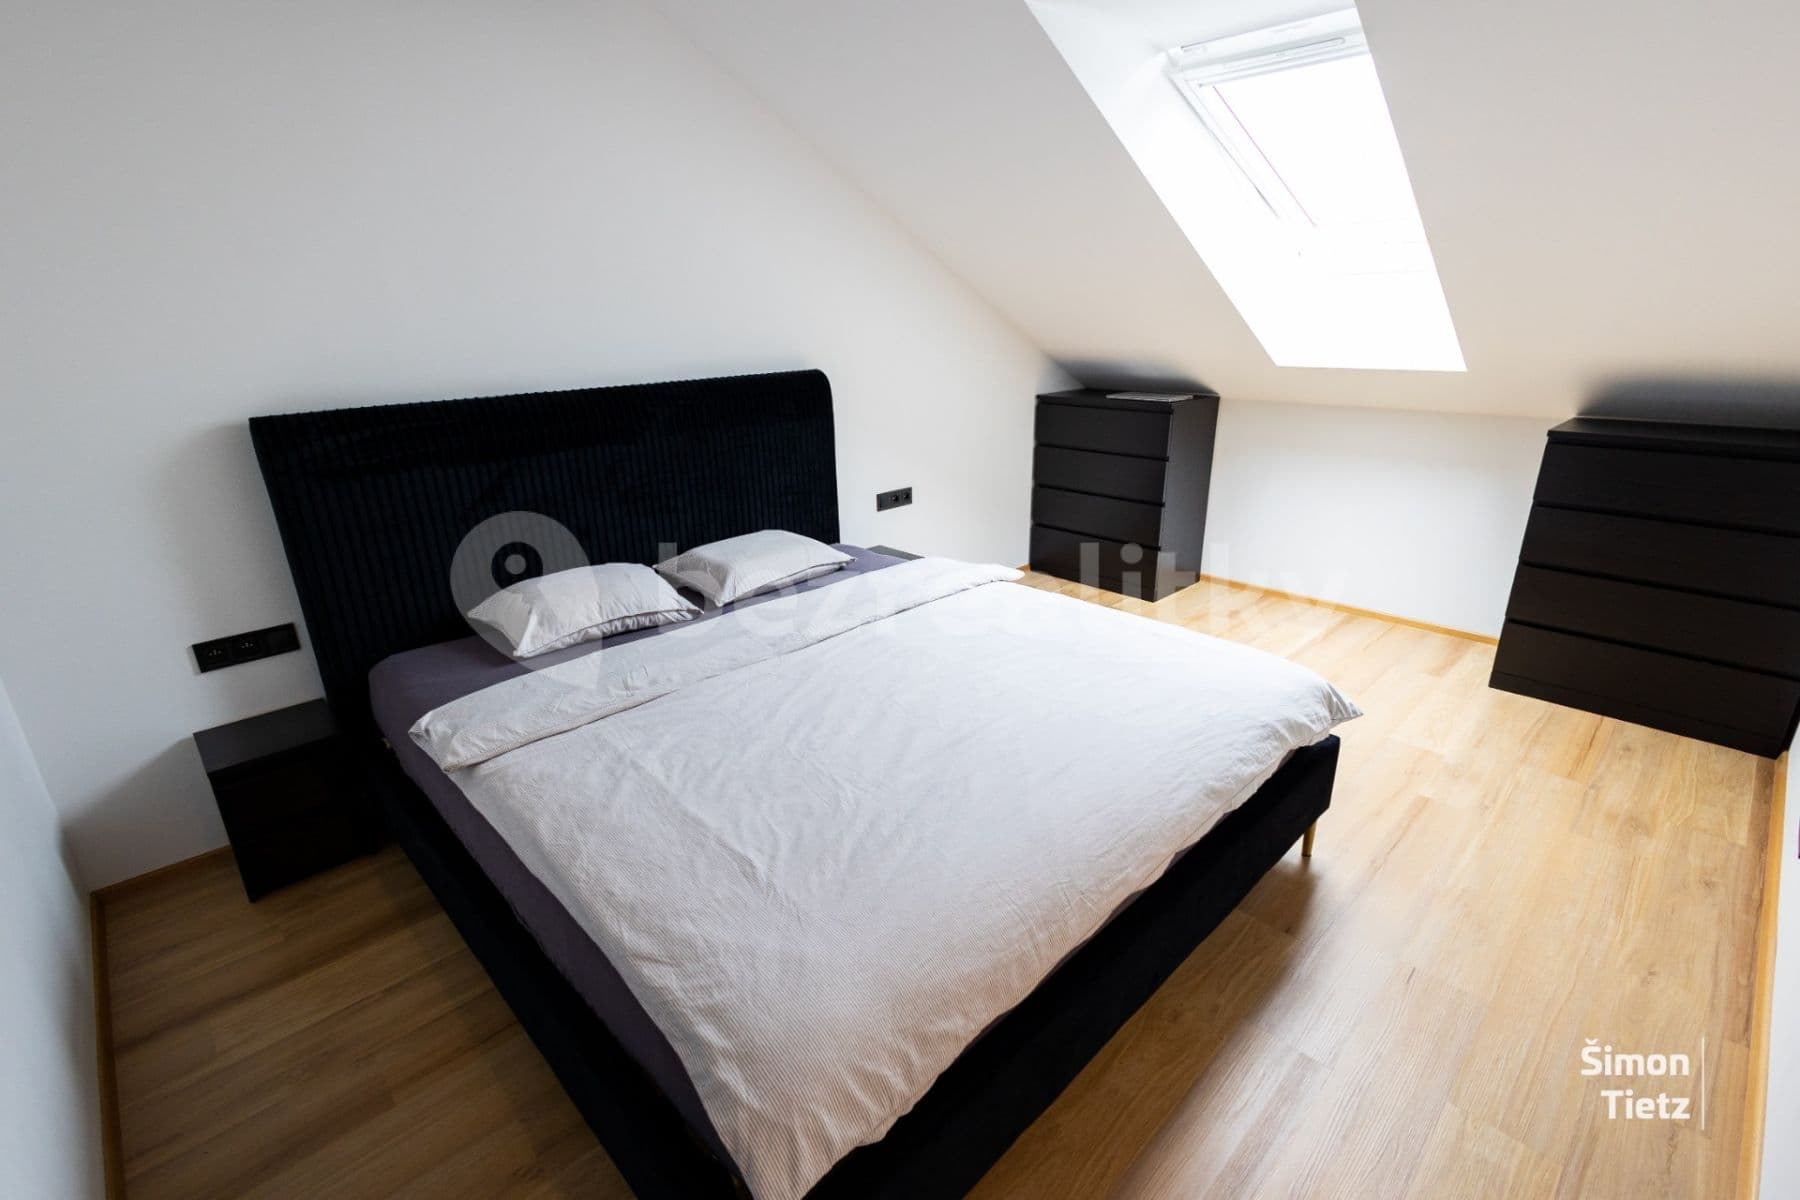 1 bedroom with open-plan kitchen flat for sale, 53 m², Olomoucká, Opava, Moravskoslezský Region